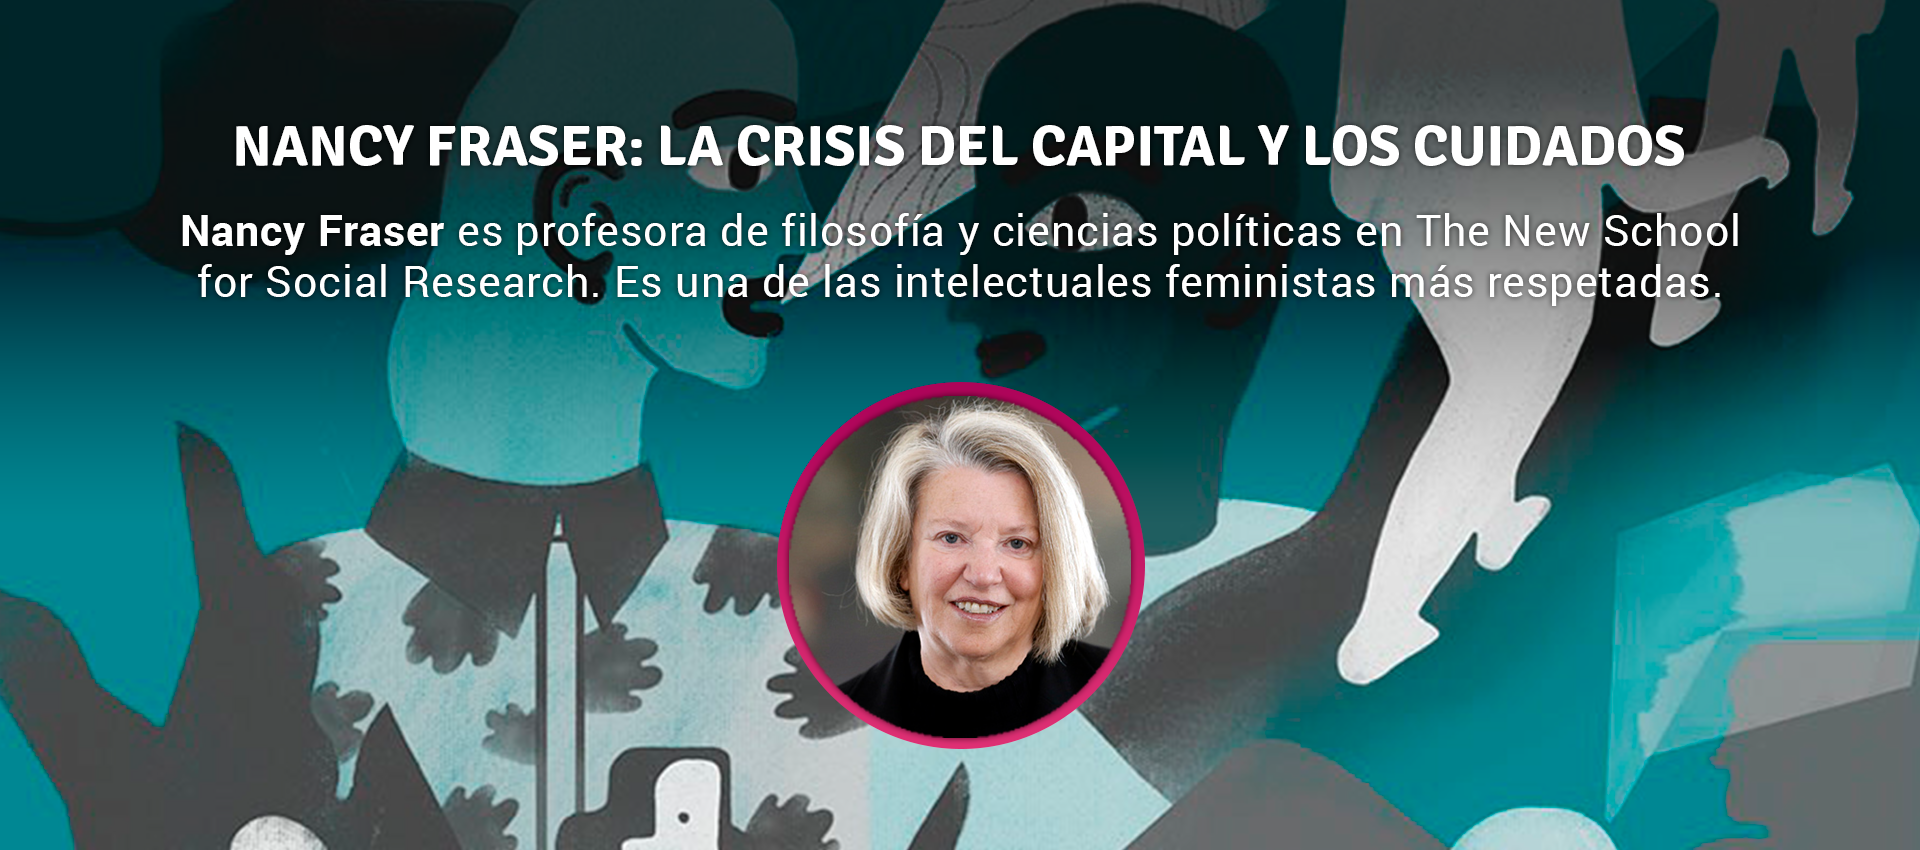 Nancy fraser - LA CRISIS DEL CAPITAL Y LOS CUIDADOS